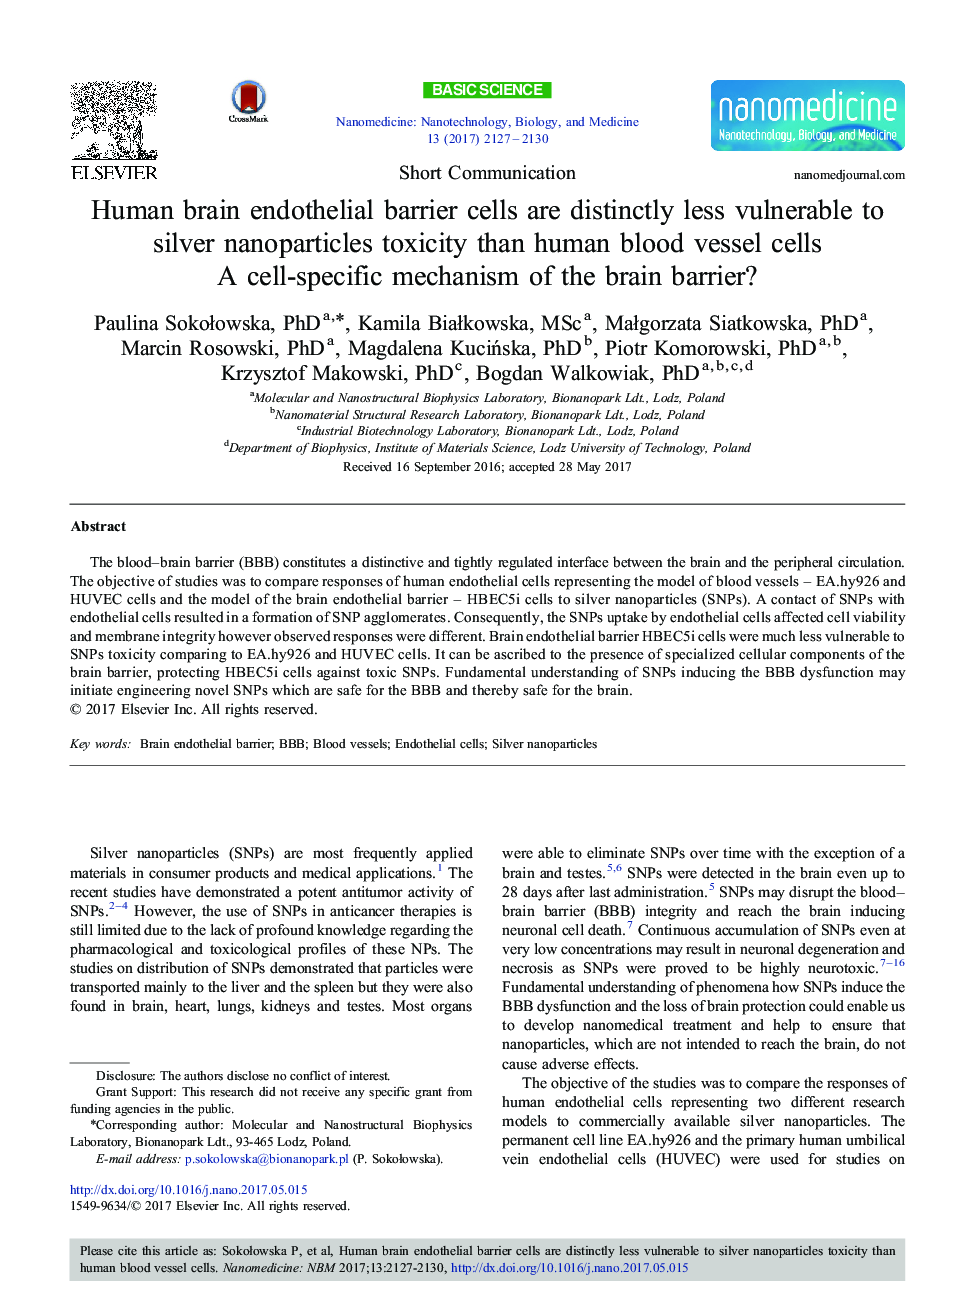 ارتباط کوتاه ارتباط سلولی سلولهای اندوتلیال مغز انسان با سمیت نانوذرات نقره نسبت به سلول های عروق خون انسان آشکارا کمتر است: مکانیسم خاص سلولی مانع مغز؟ 